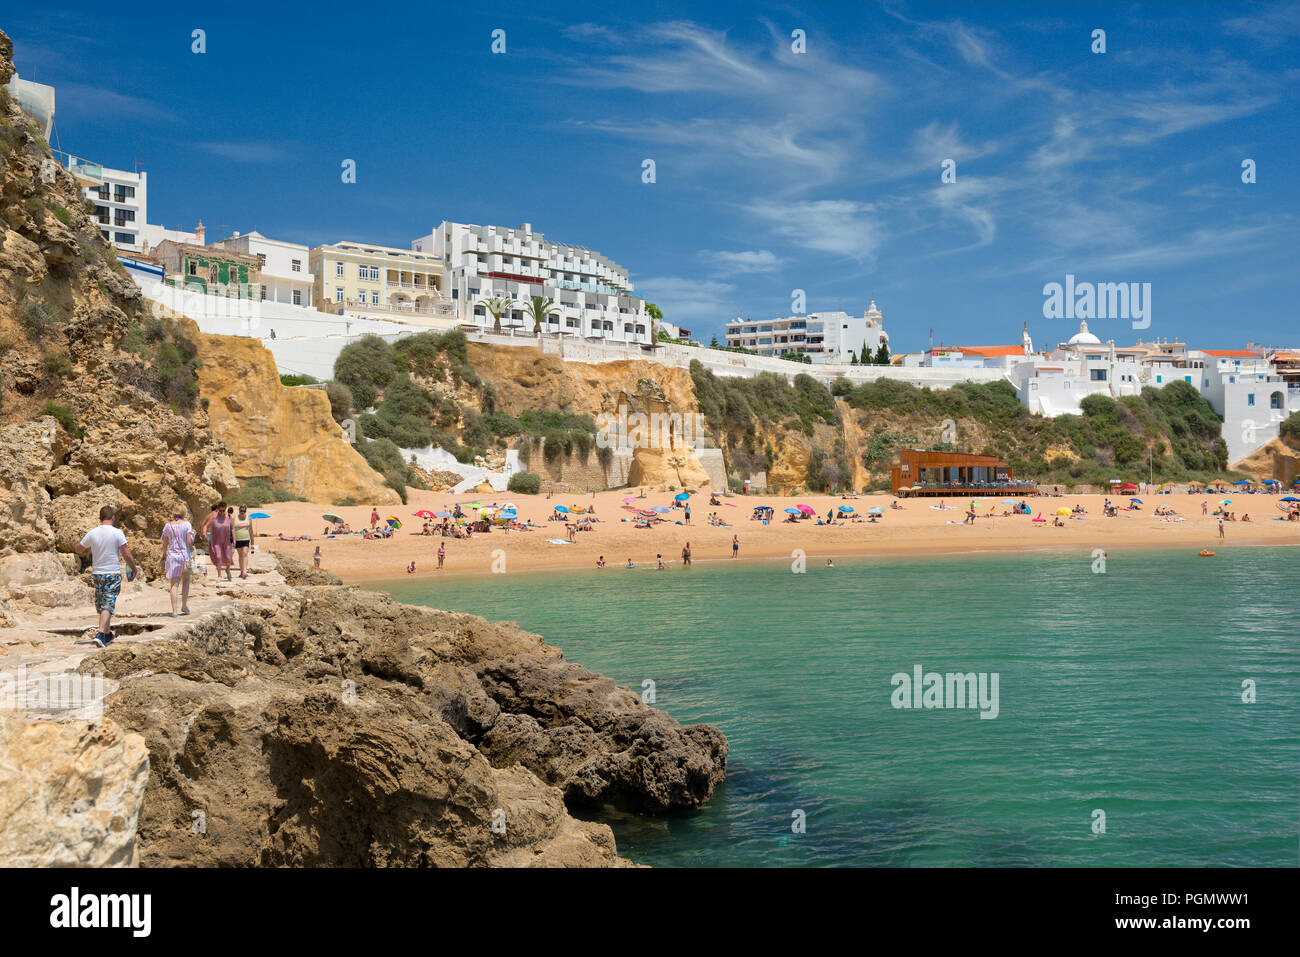 Strand von Albufeira mit dem Hotel Rocamar, der Algarve, Portugal Stockfoto